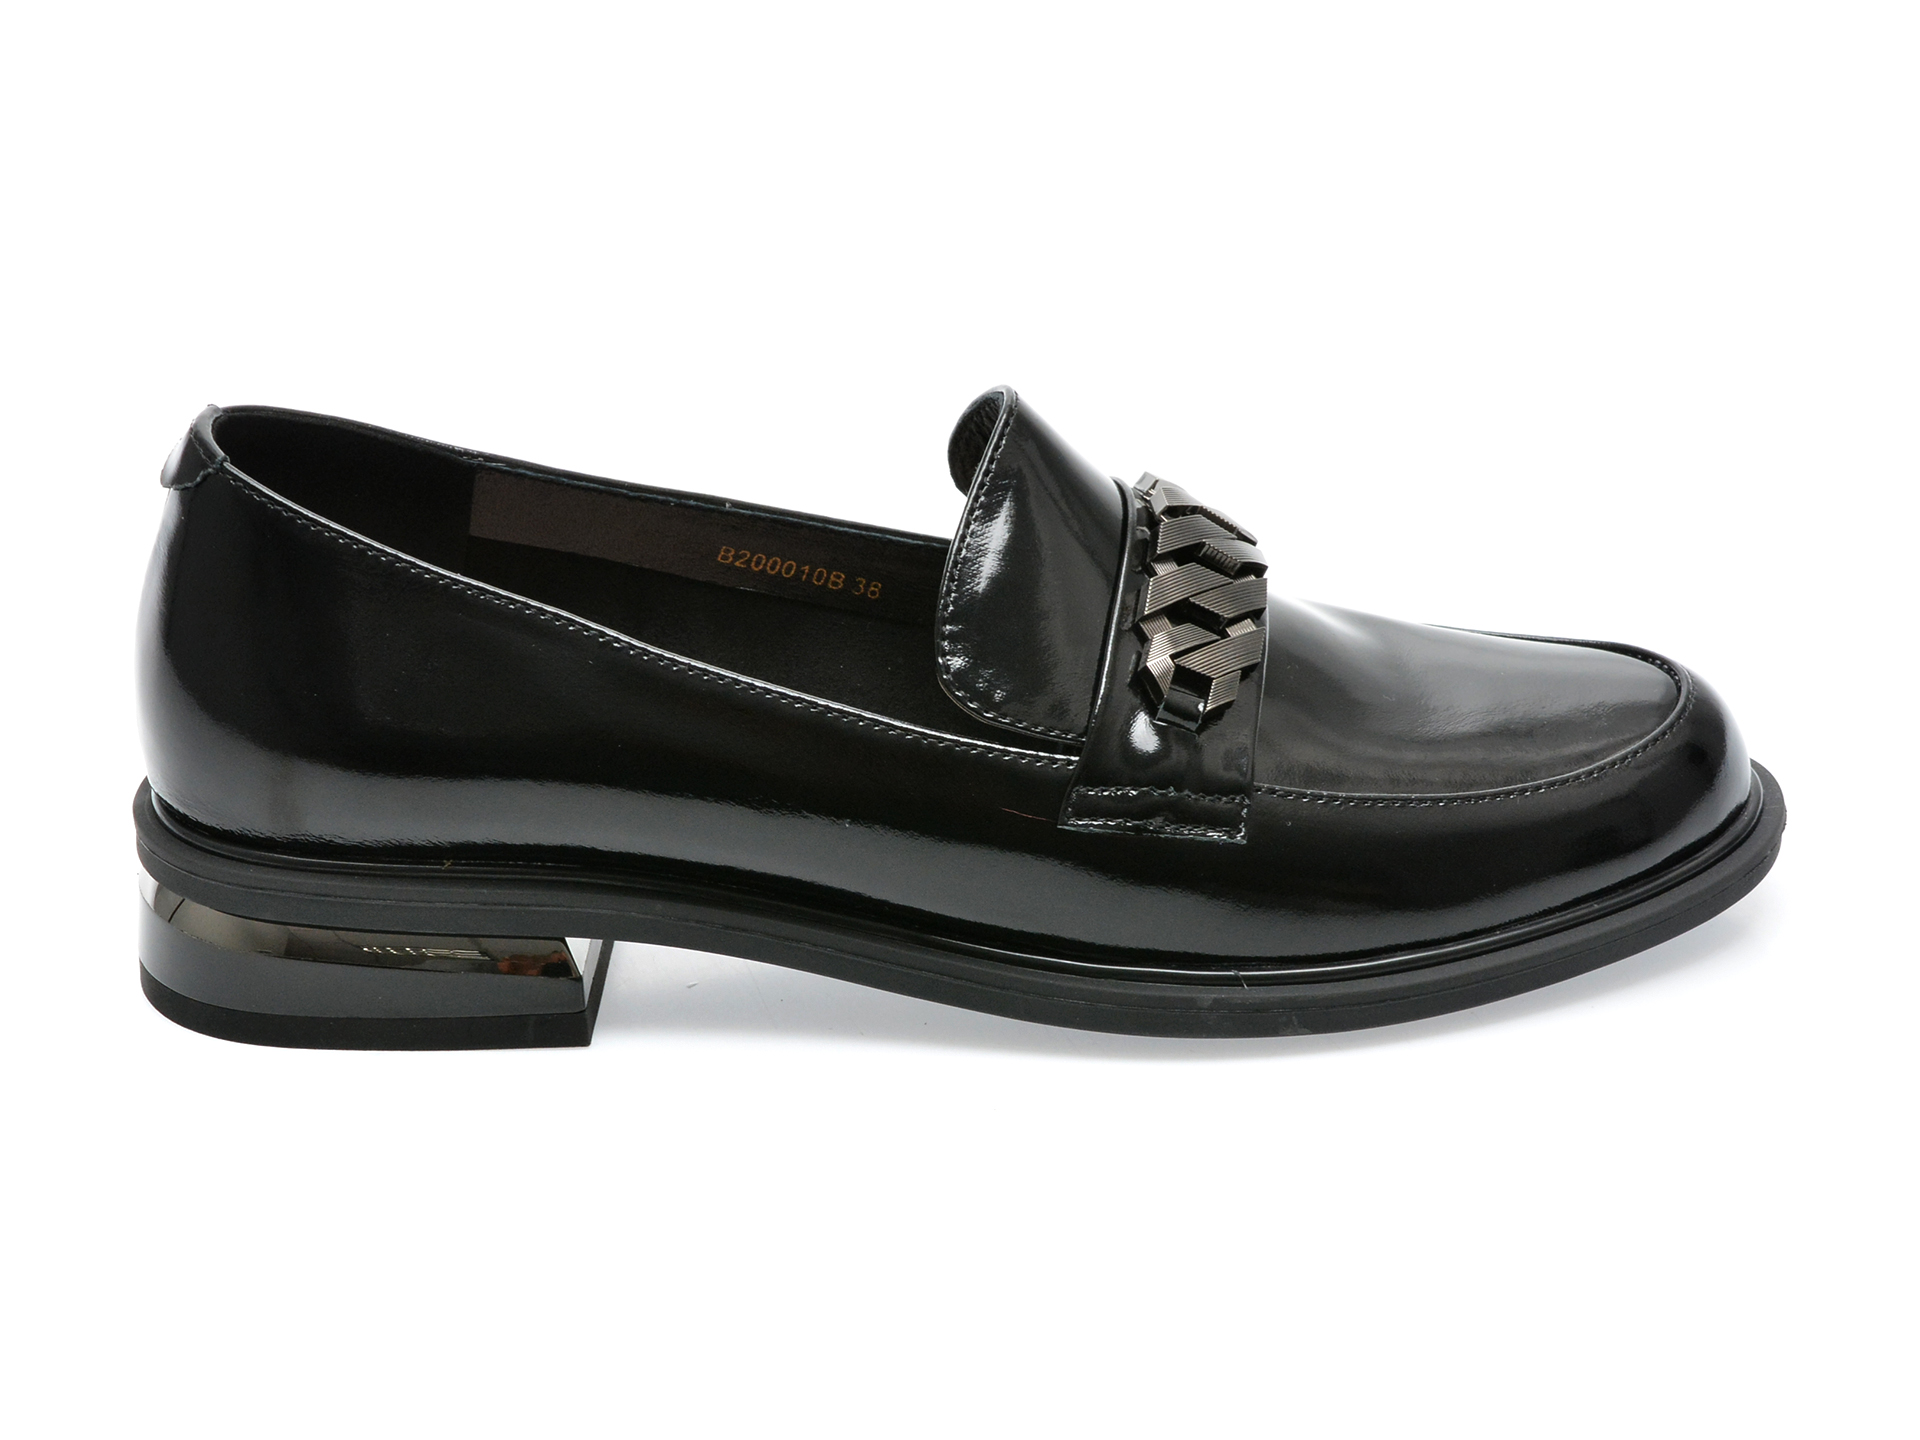 Poze Pantofi EPICA negri, B200010, din piele naturala lacuita Tezyo